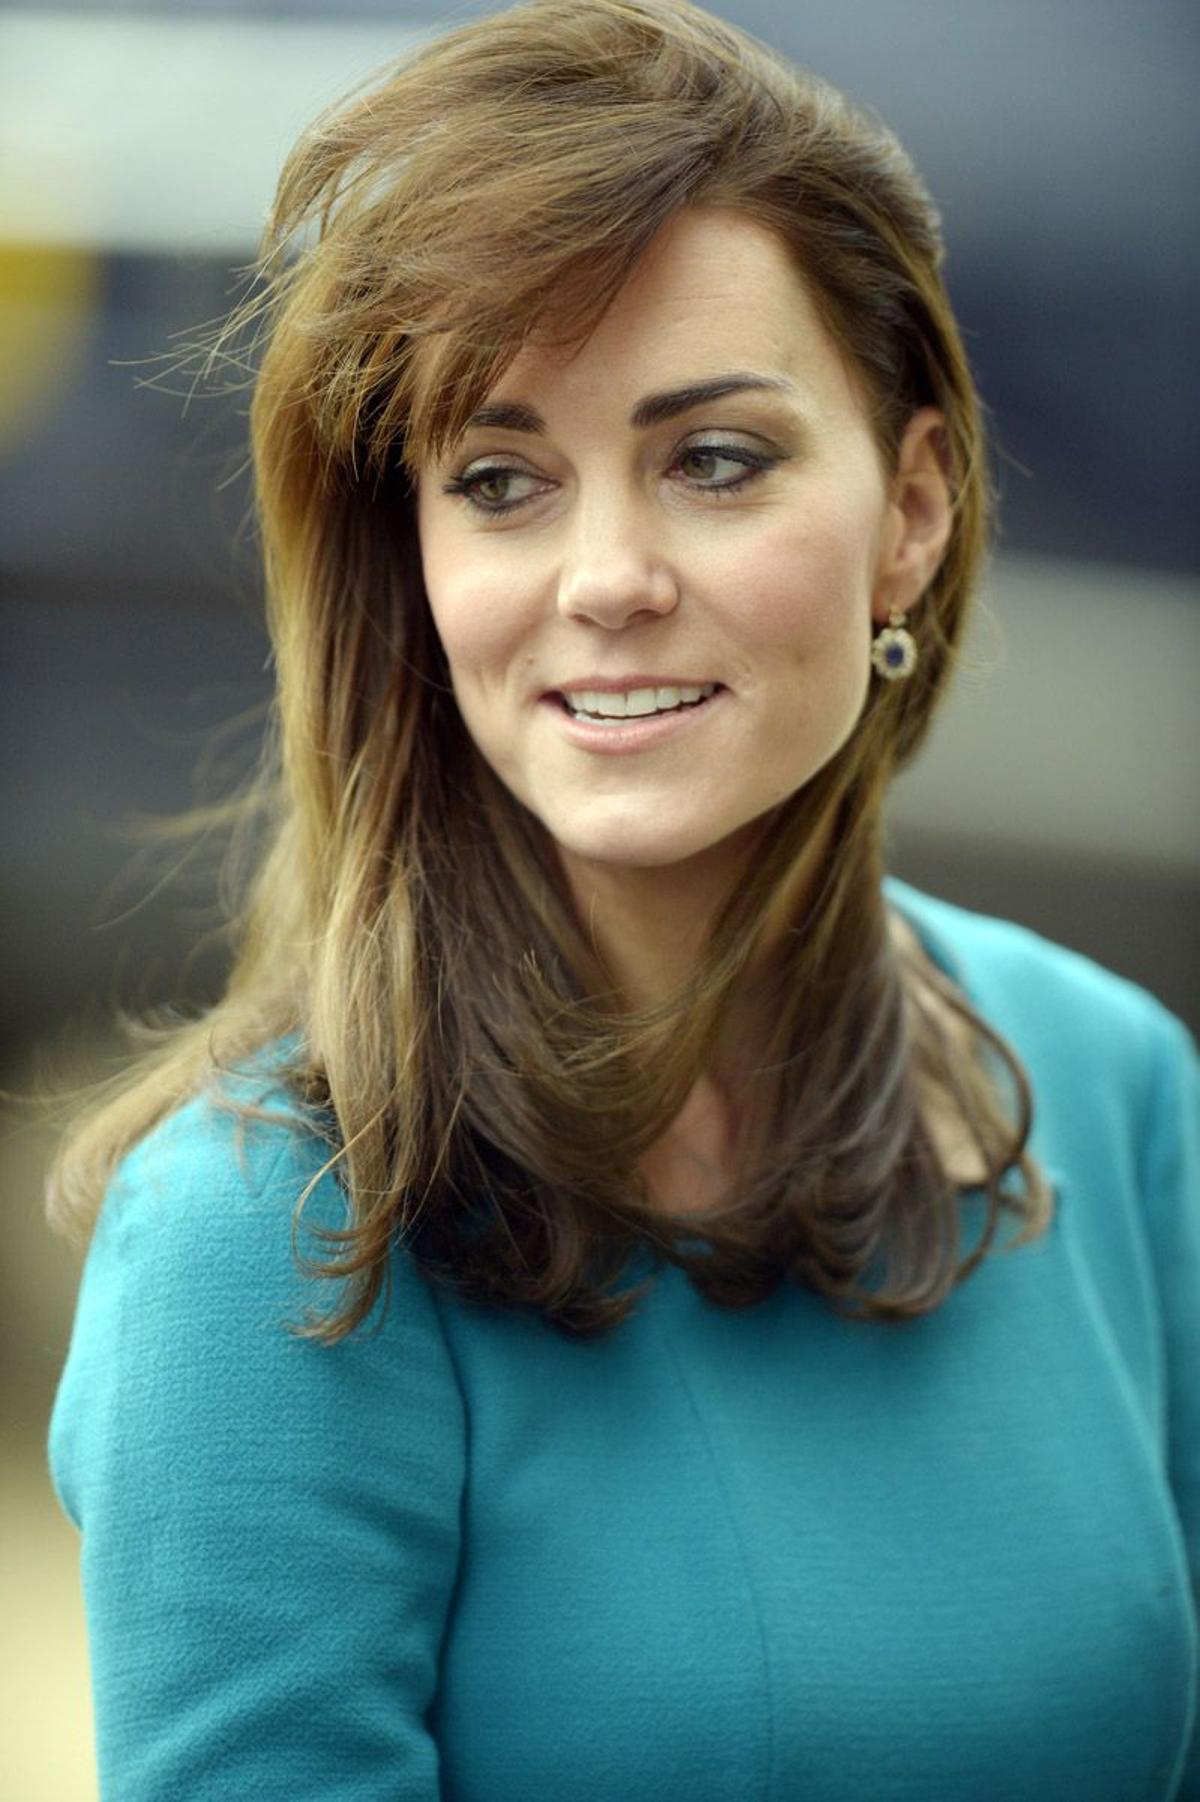 El viento le juega una mala pasada a Kate Middleton